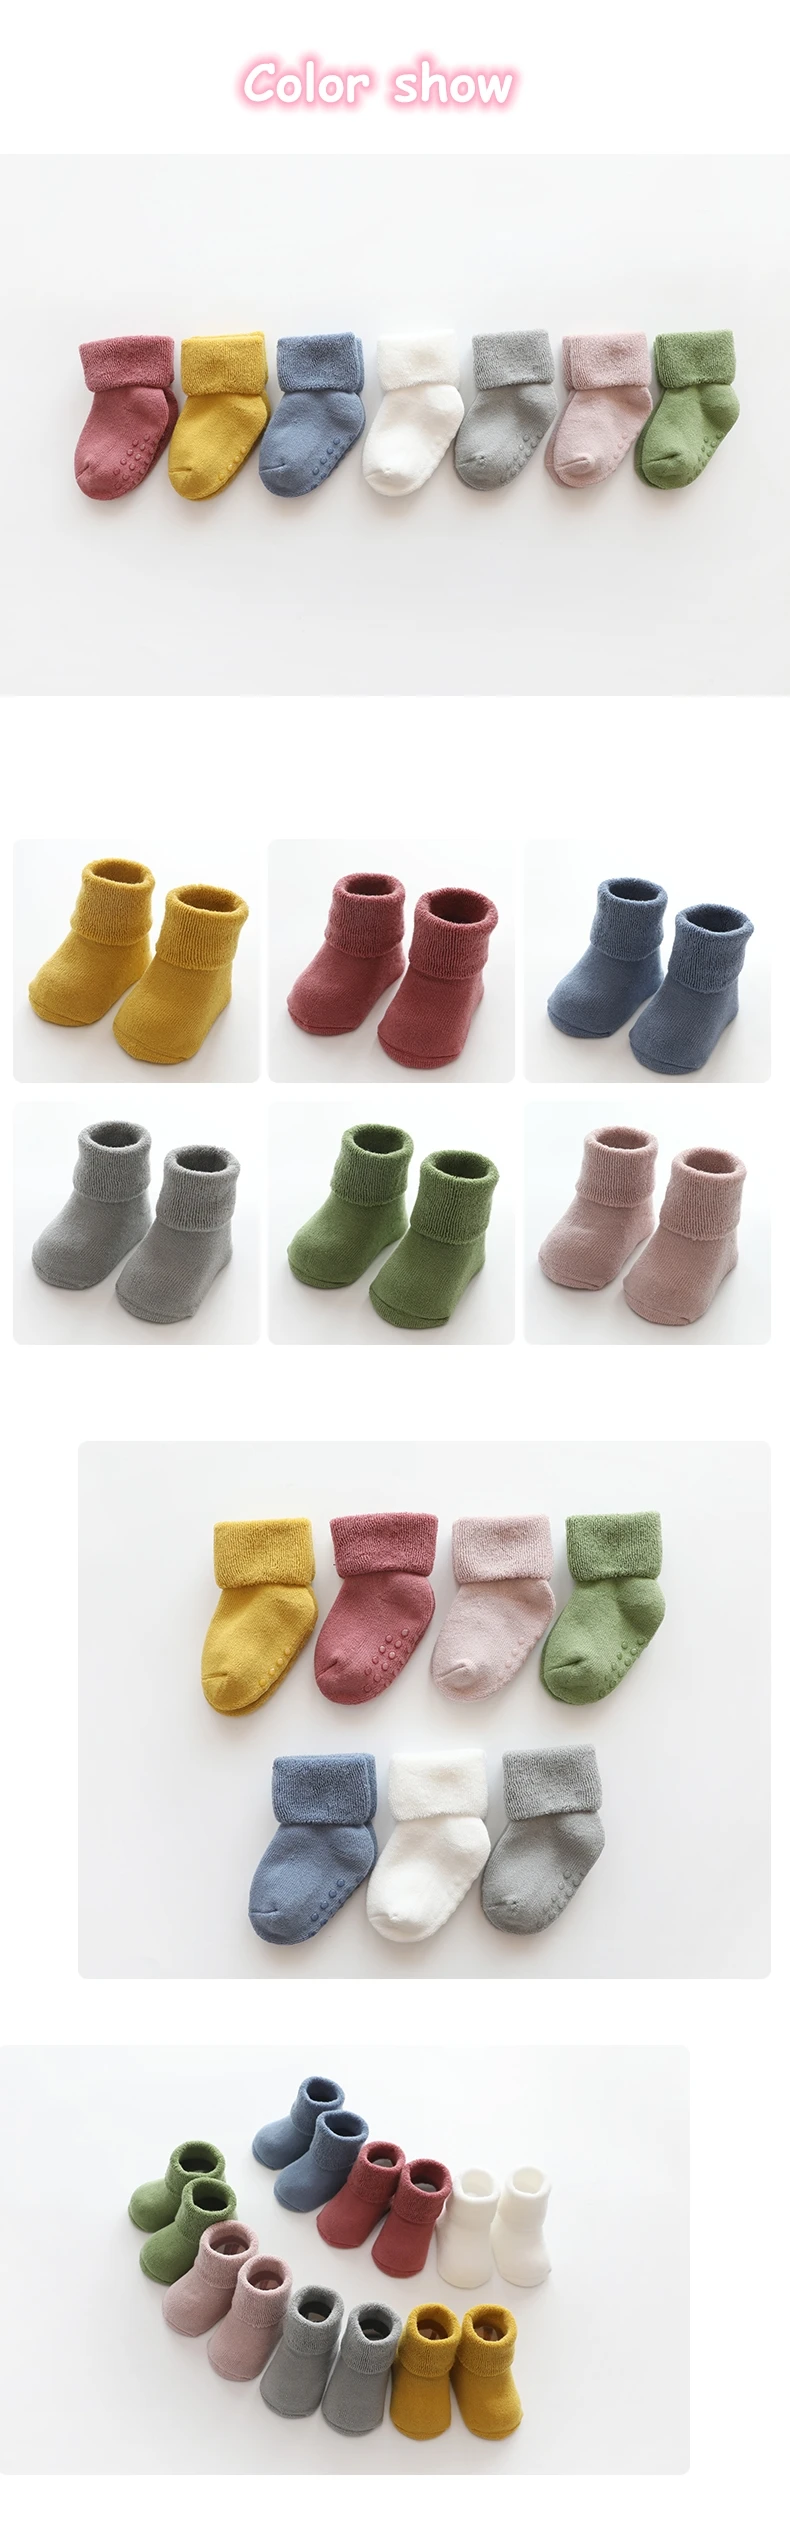 Baby socks4.jpg